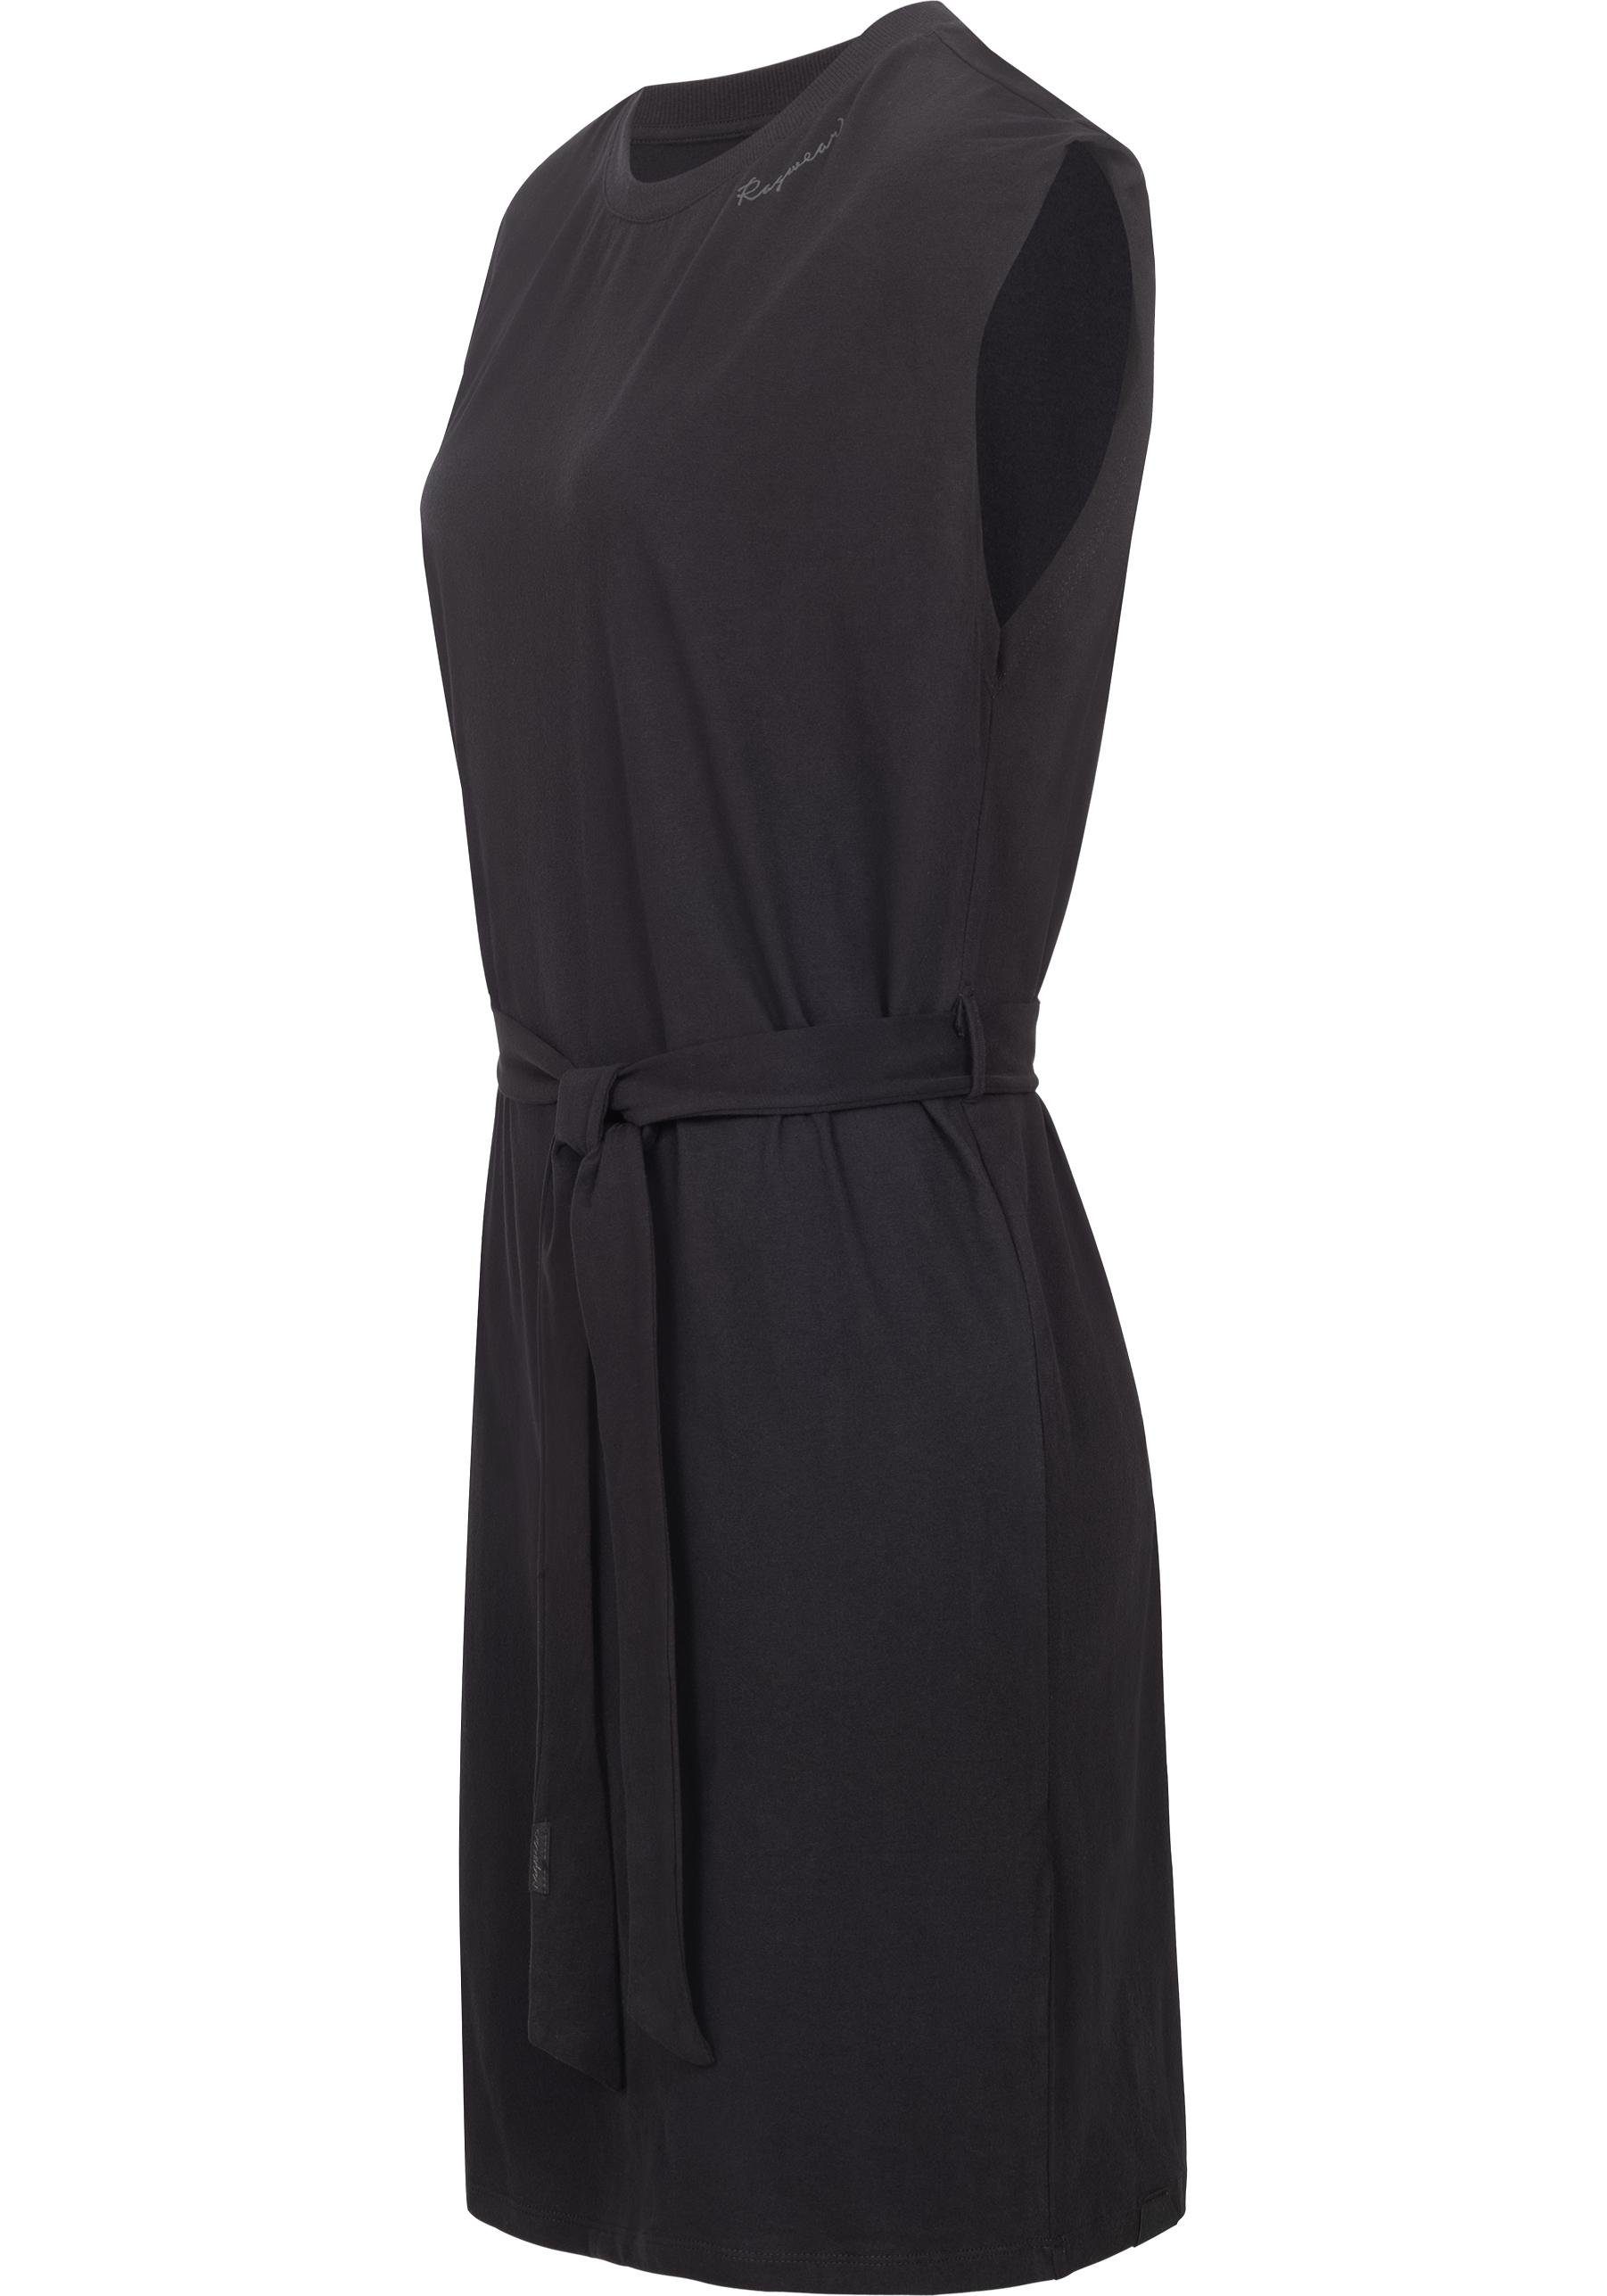 stylisches Shirtkleid Bindeband der Sommerkleid an mit Delocca Taille schwarz Ragwear